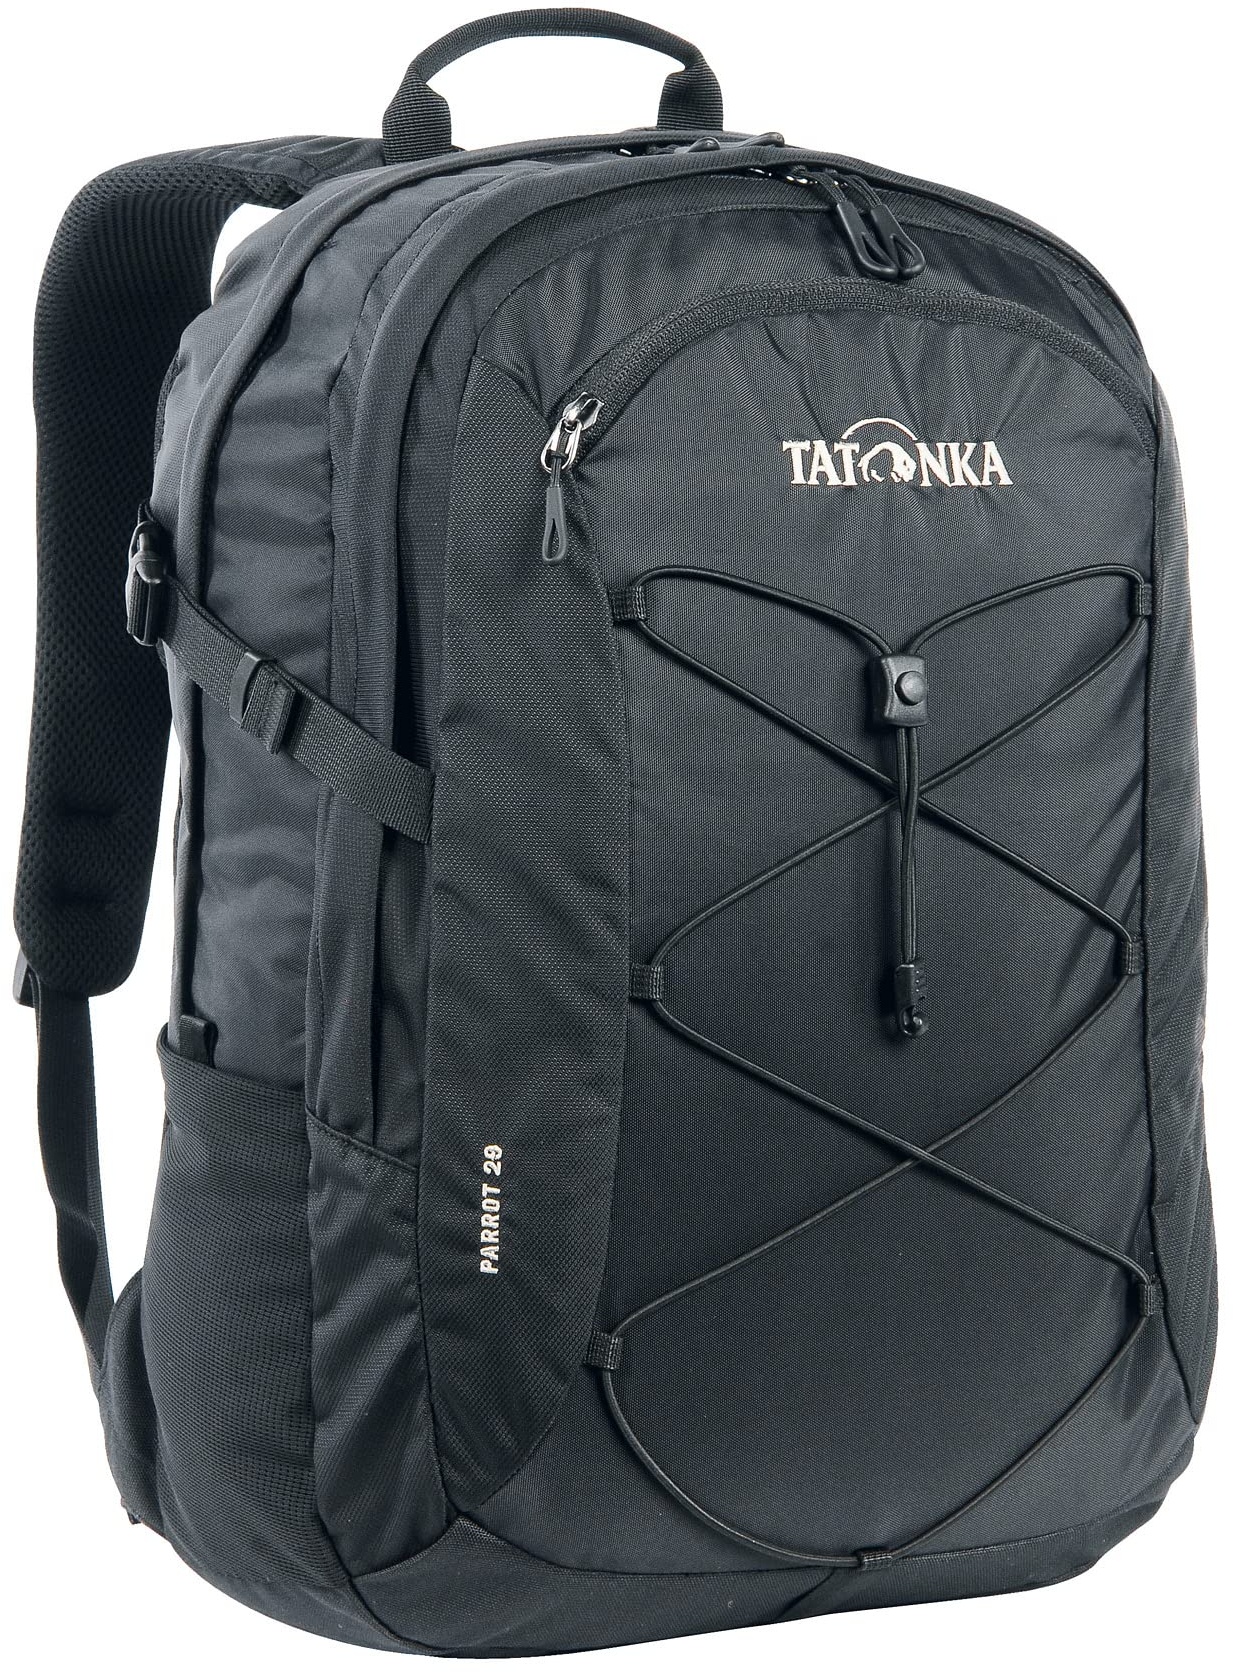 Tatonka Laptop-Rucksack Parrot 29 - Daypack mit 15 Zoll Notebookfach - bietet Platz für mehrere DIN A4-Ordner - für Damen und Herren - 29 Liter - schwarz, 48 x 34 x 13 cm